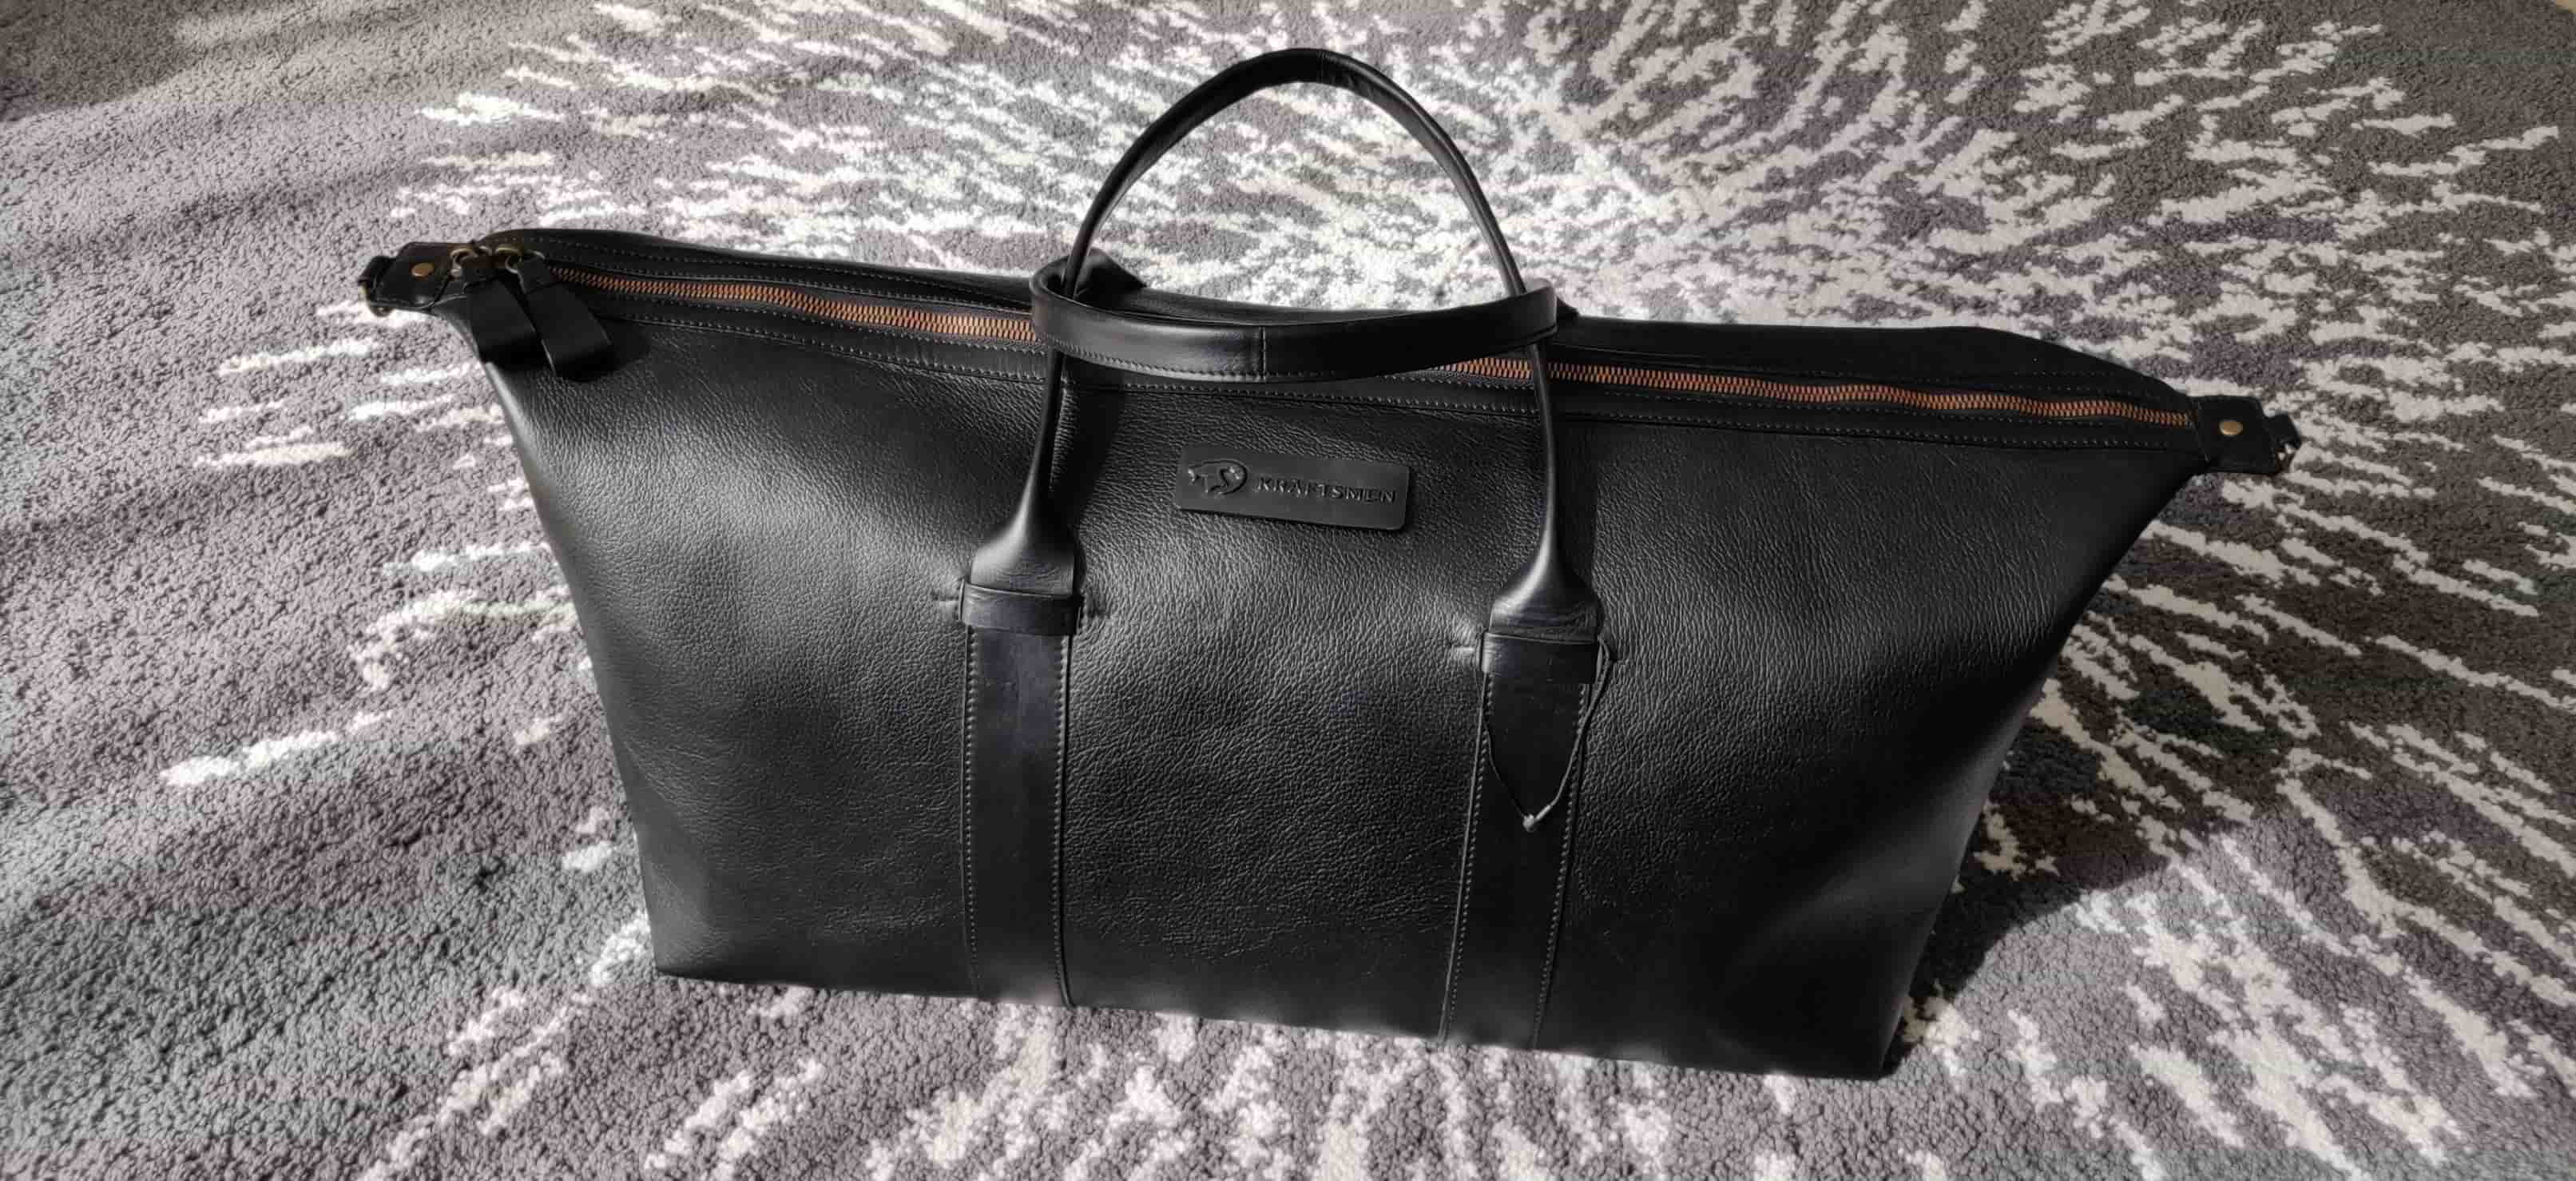 leather weekender bags 